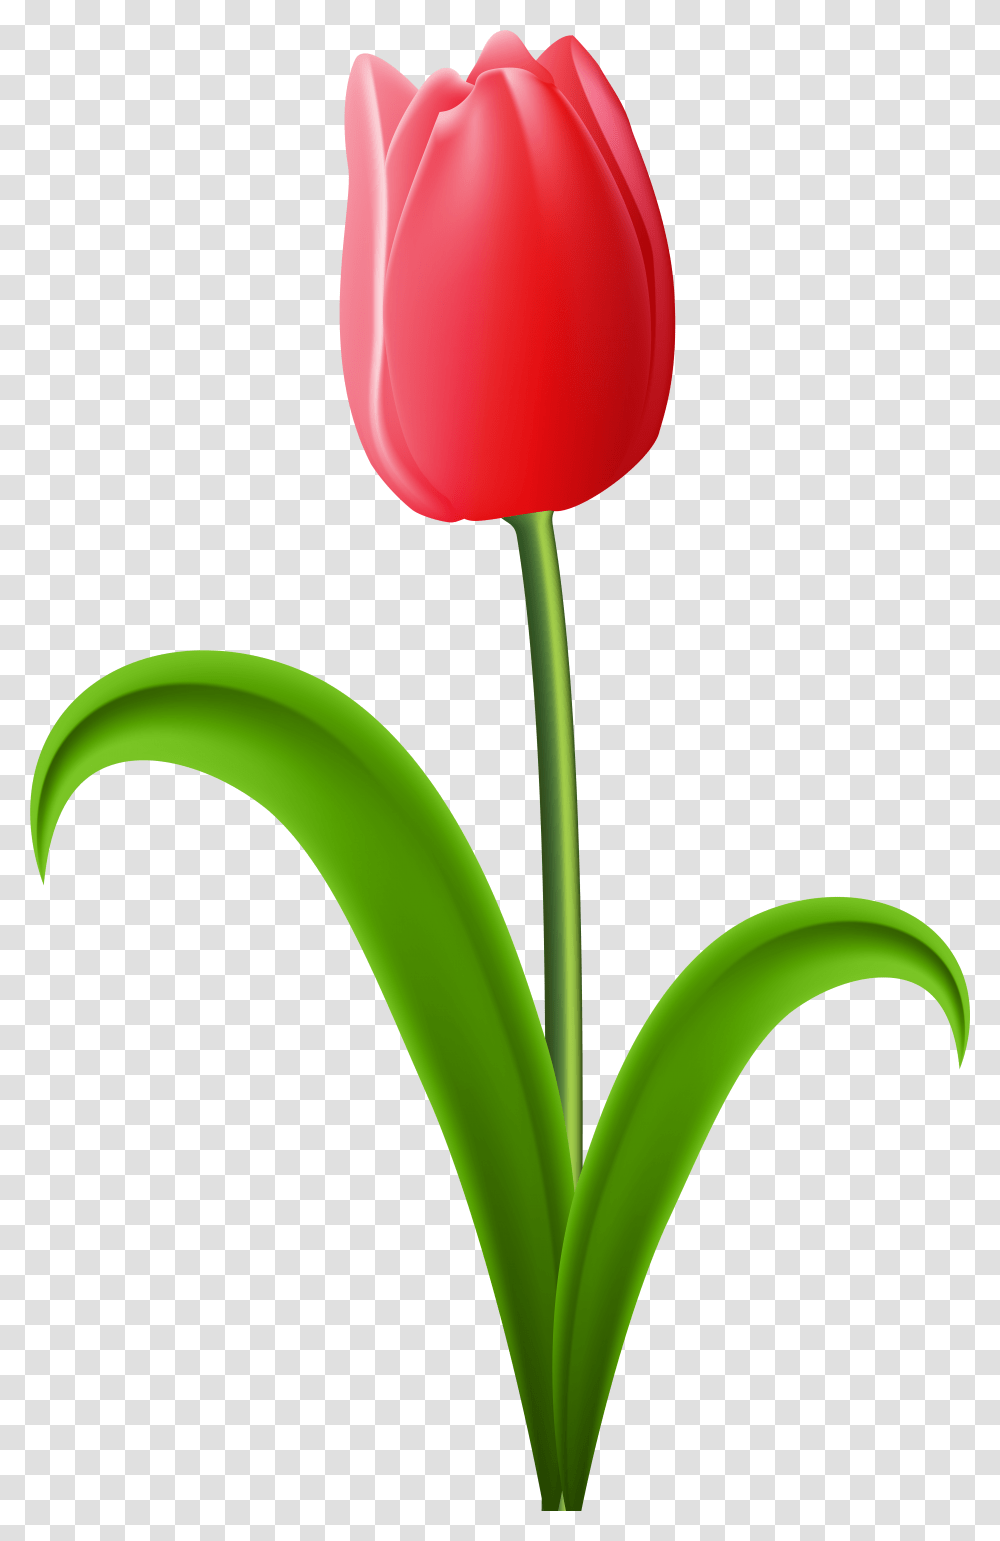 Gambar Bunga Tulip Red Tulip Clip Art Tulip Clipart, Plant, Flower, Blossom, Vase Transparent Png